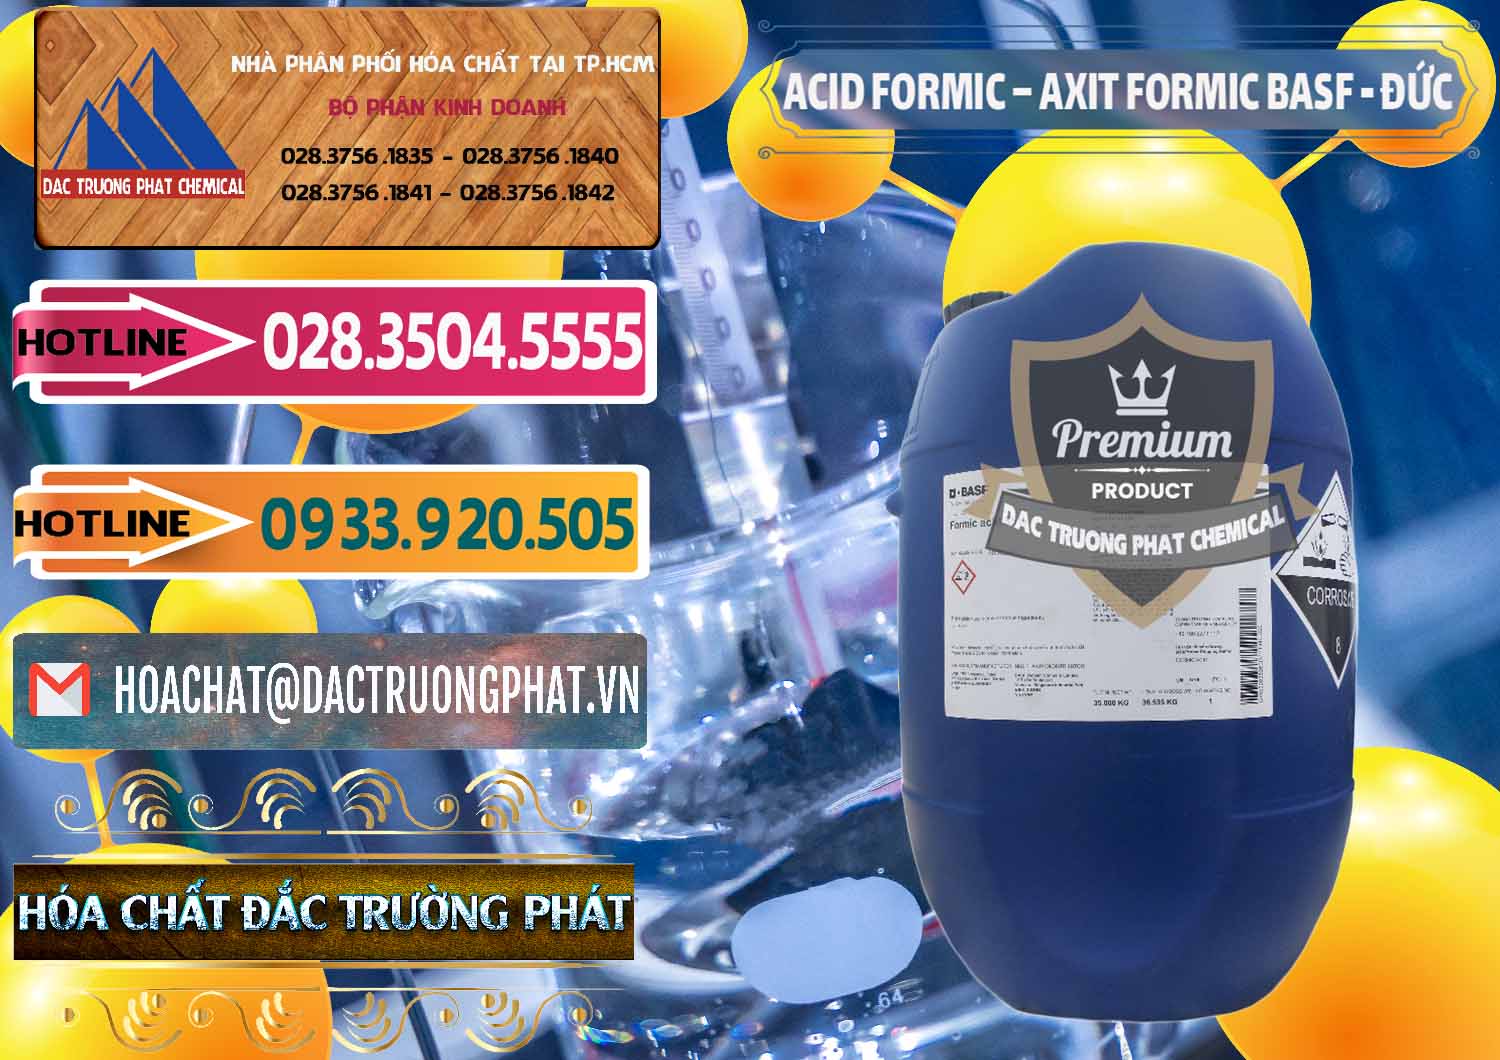 Nơi cung cấp & bán Acid Formic - Axit Formic BASF Đức Germany - 0028 - Cty chuyên phân phối _ nhập khẩu hóa chất tại TP.HCM - dactruongphat.vn